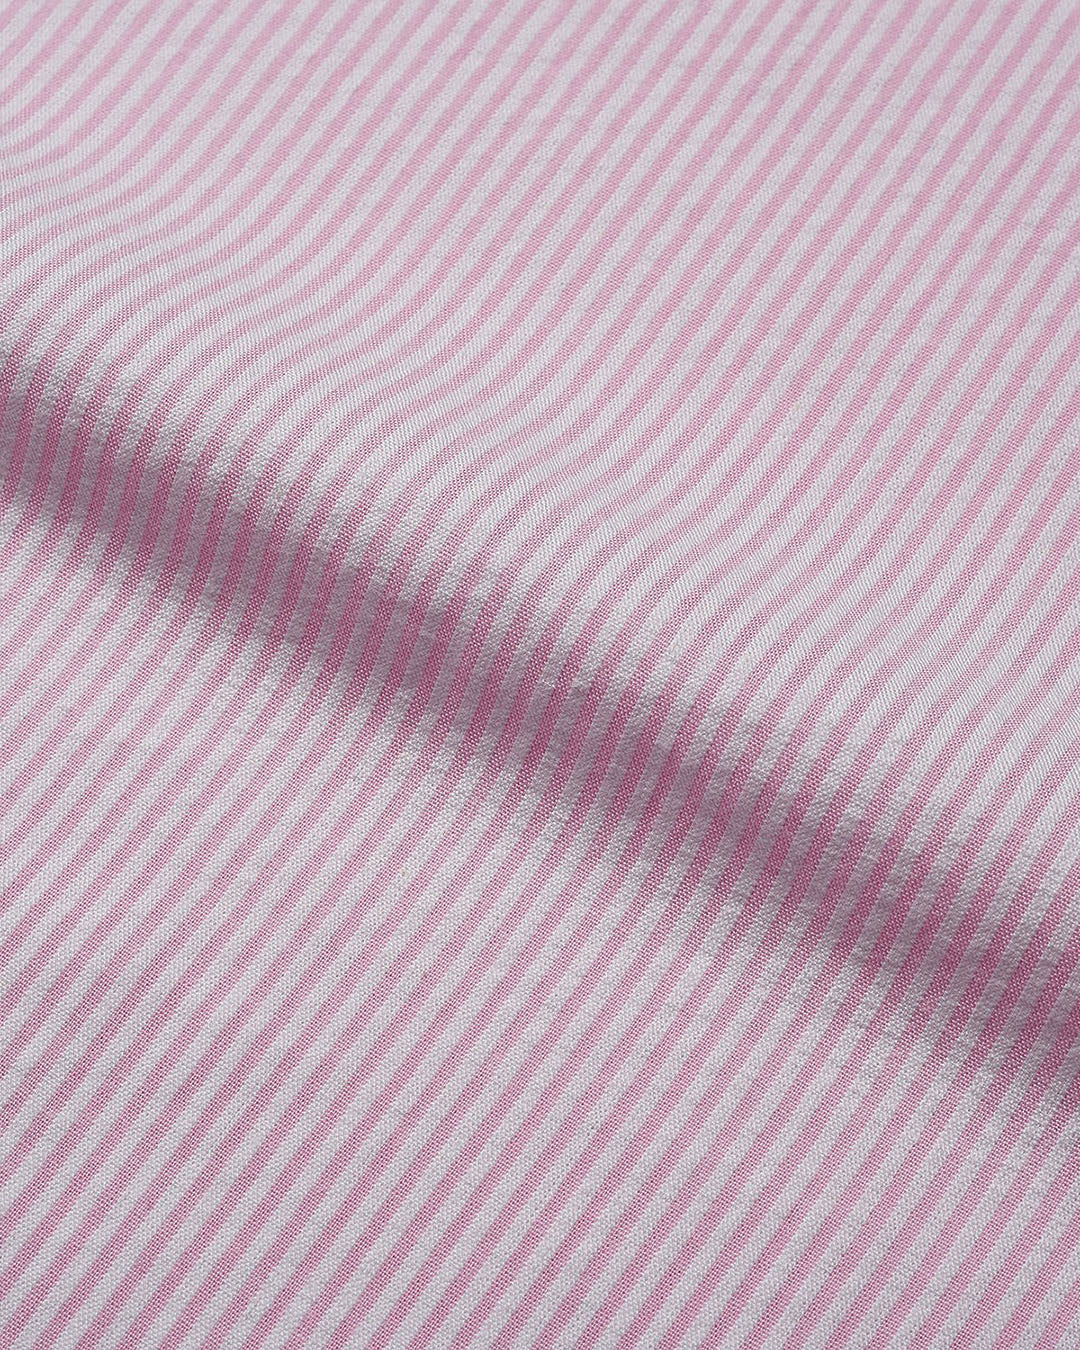 Summer Shirt in Pink White Pin Stripes Seersucker